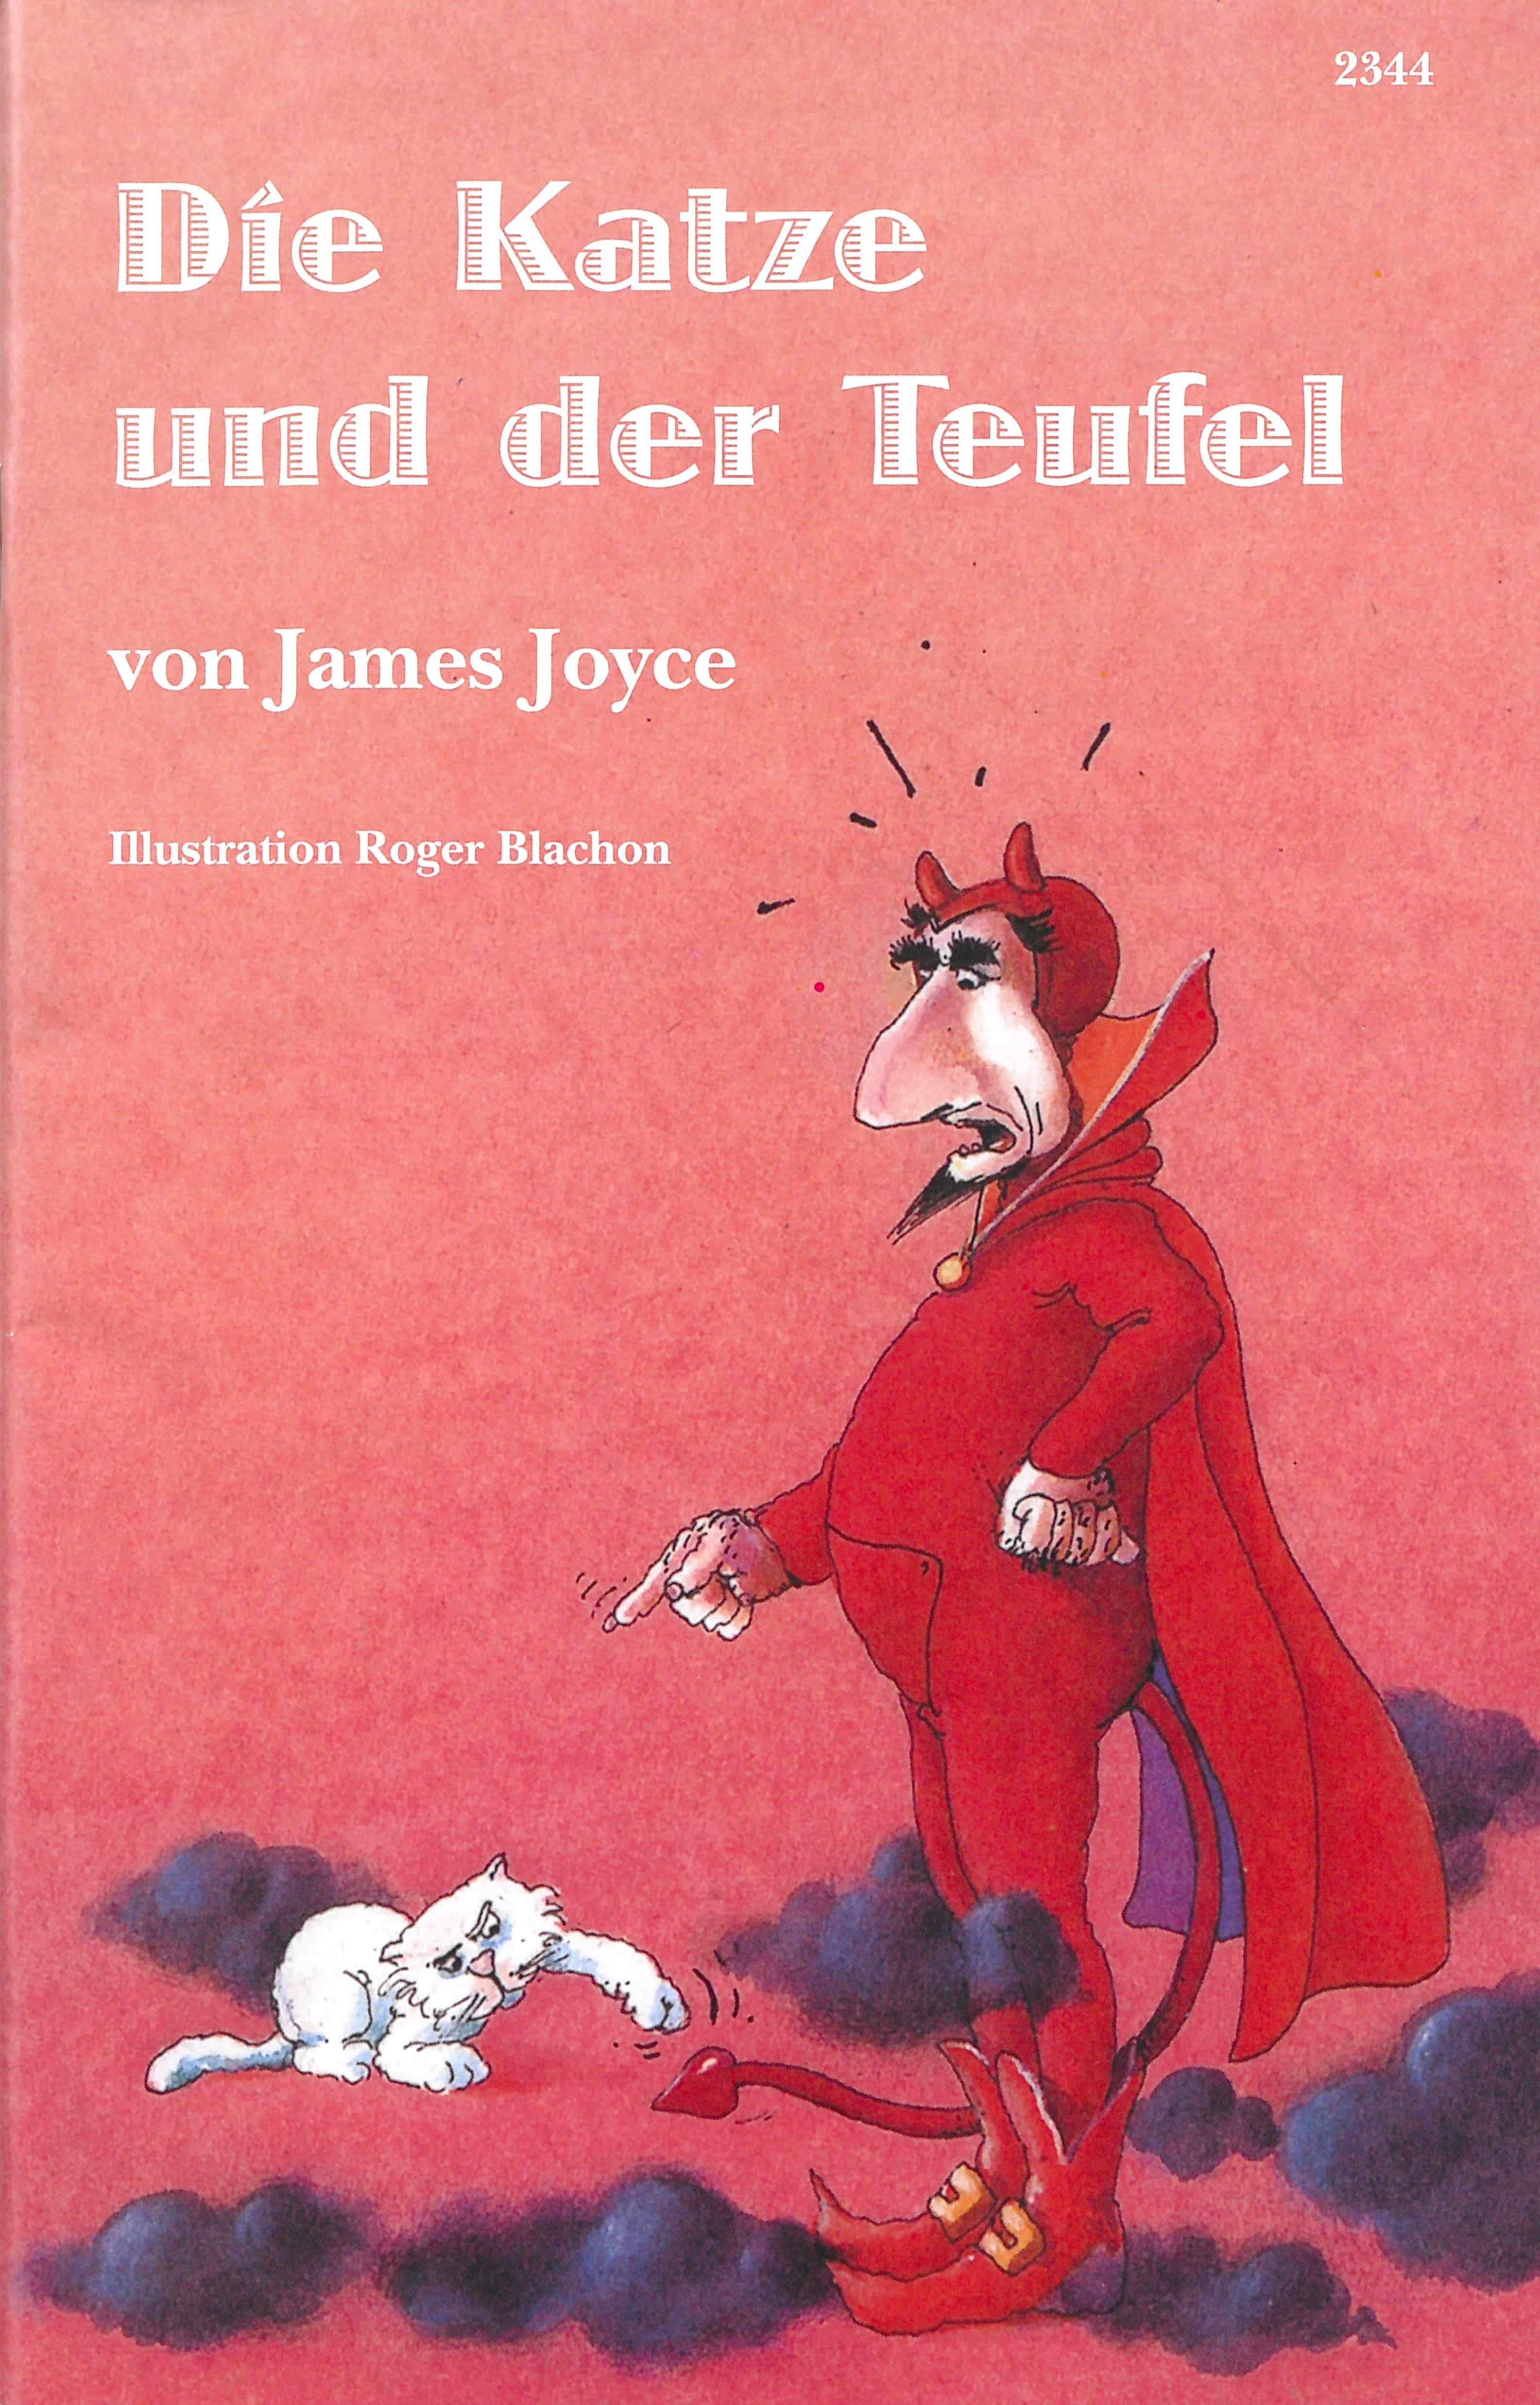 Die Katze und der Teufel, ein Kinderbuch von James Joyce, Illustration von Roger Blachon, SJW Verlag, Sagen & Fabeln